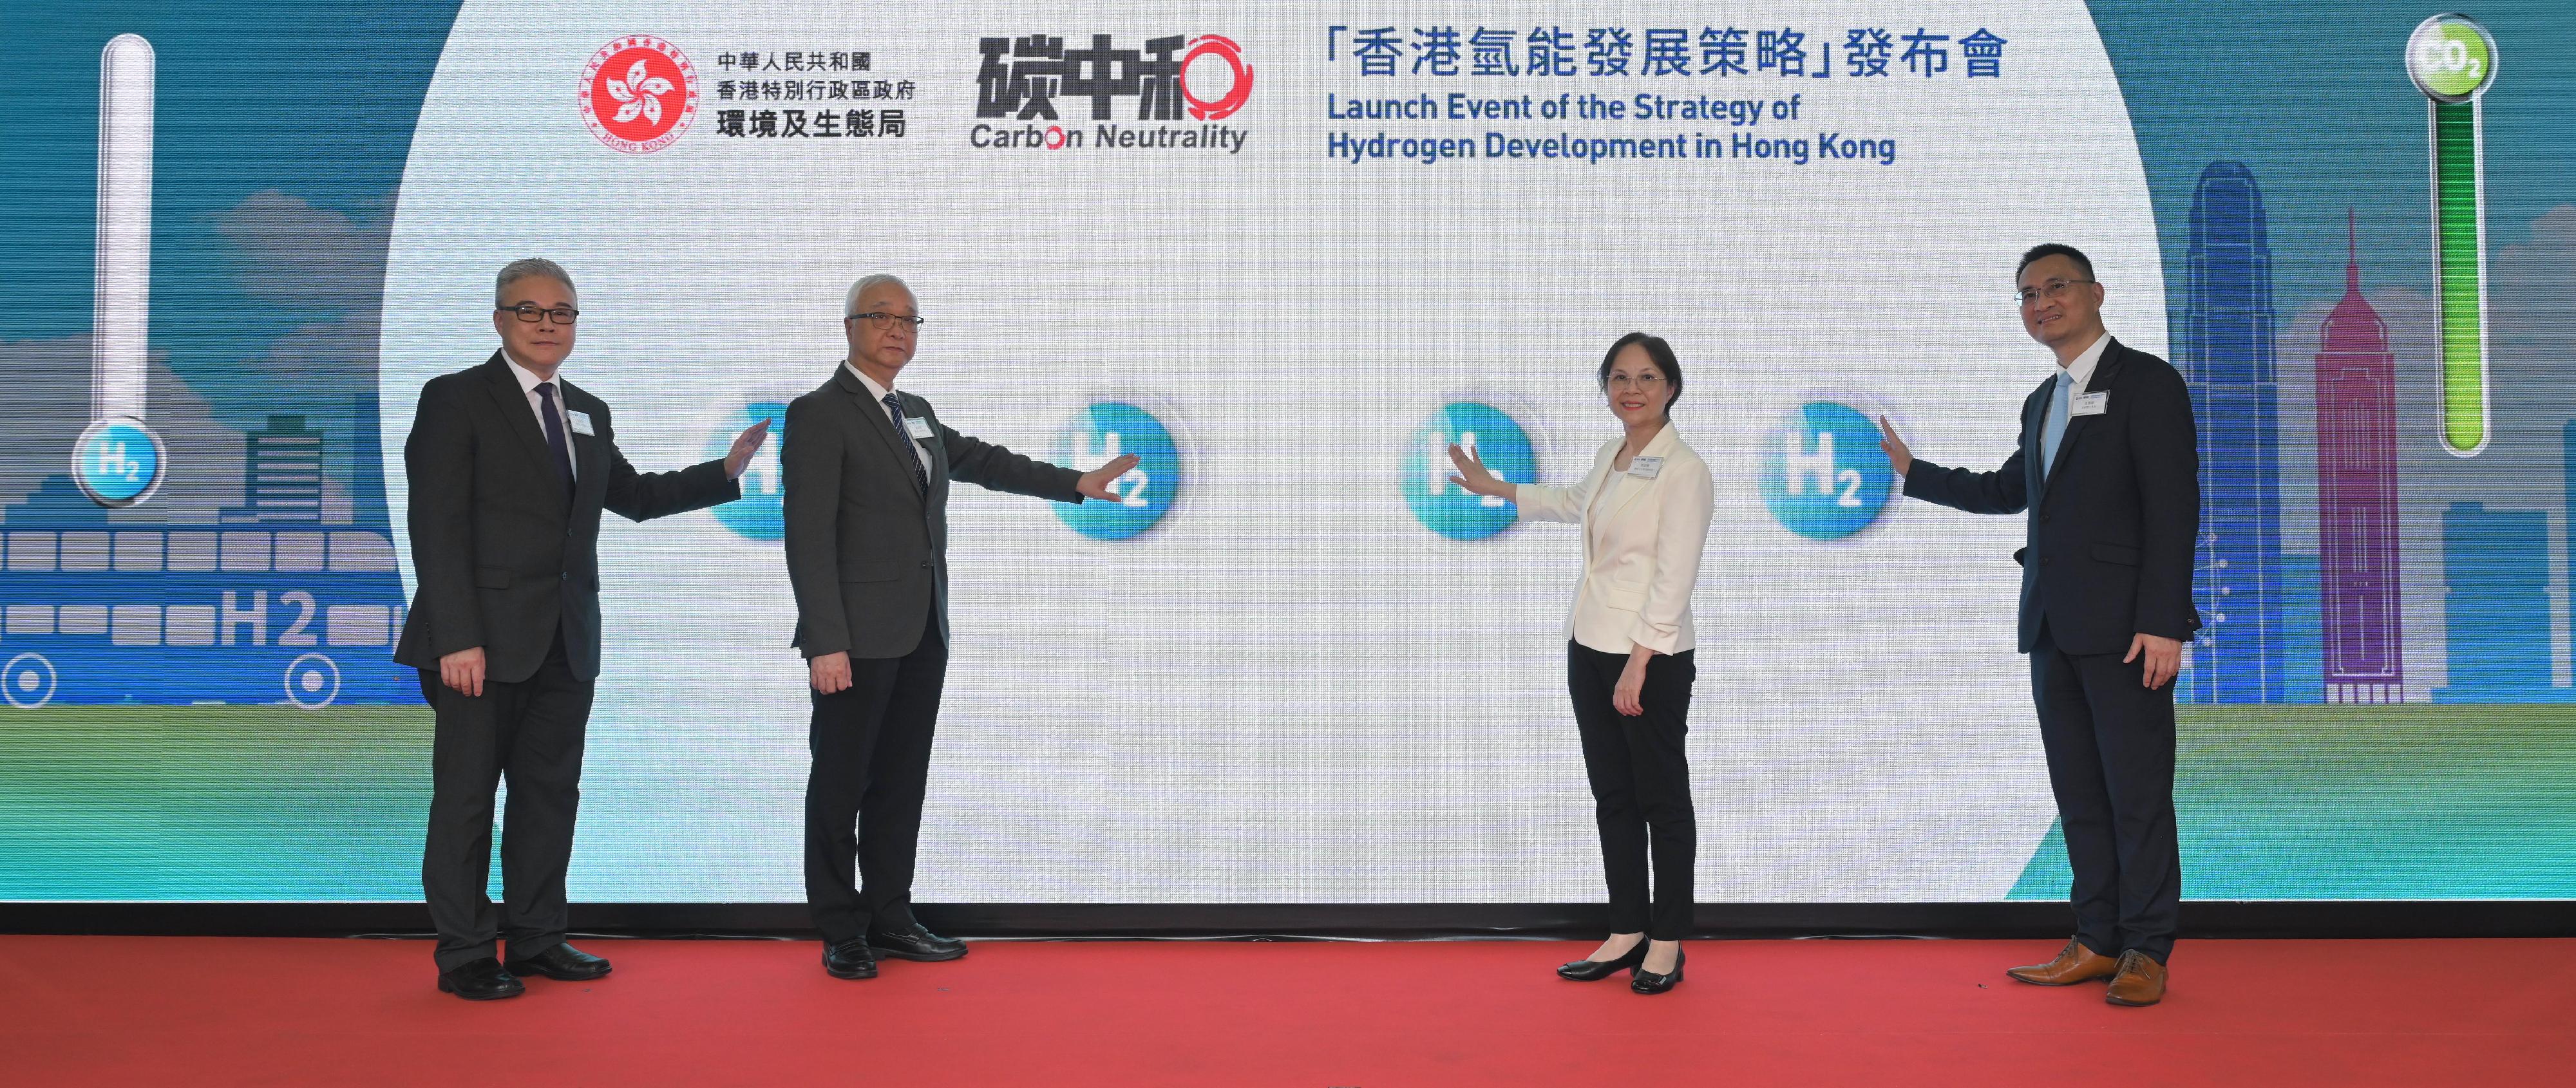 政府今日（六月十七日）公布《香港氢能发展策略》。图示环境及生态局局长谢展寰（左二）、环境及生态局副局长黄淑娴（右二）、气候变化专员黄传辉（右一）和机电工程署署长潘国英（左一）主持启动仪式。